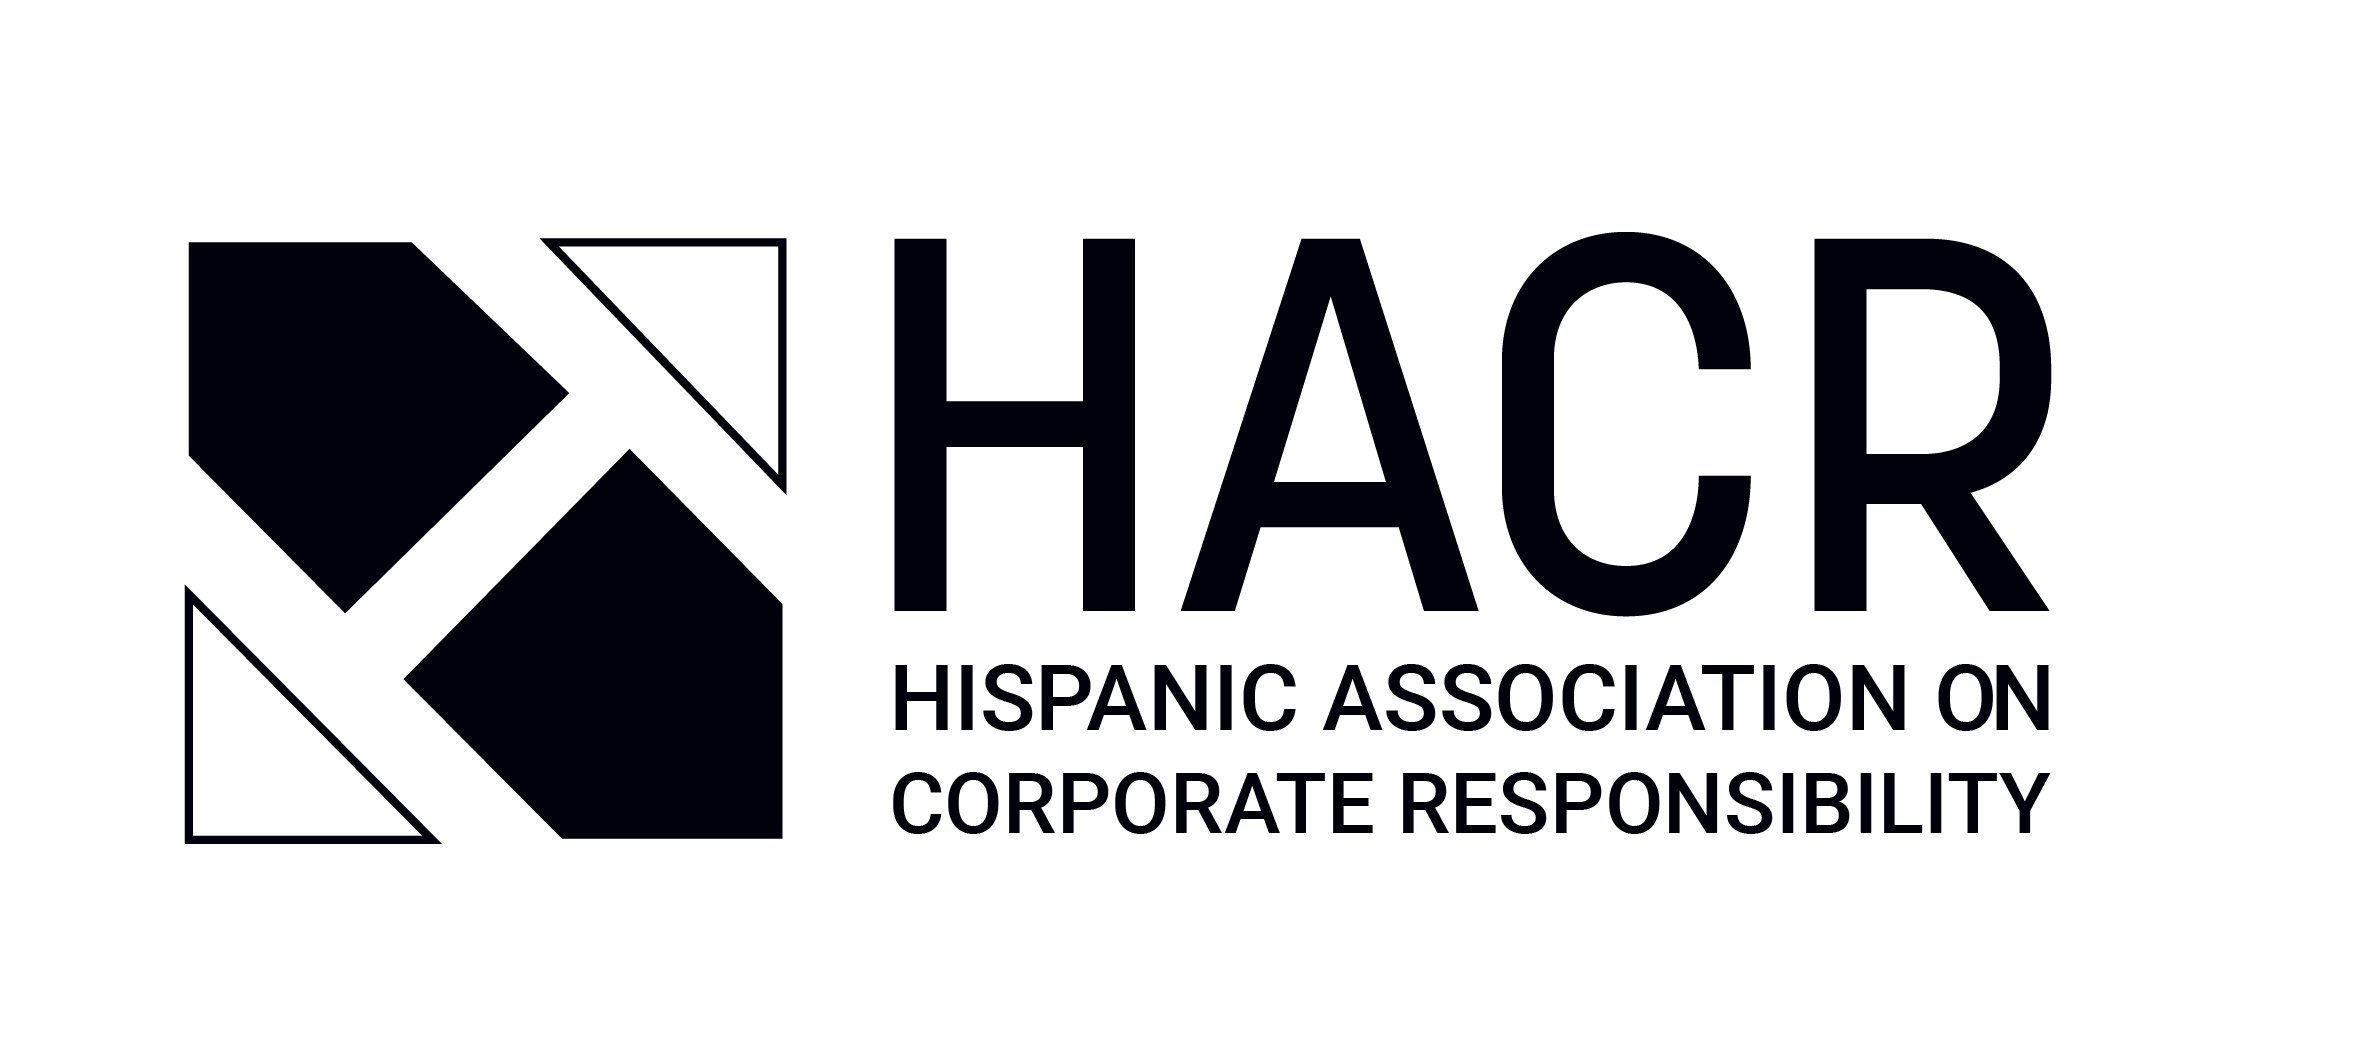 HACR Logo Vertical Black